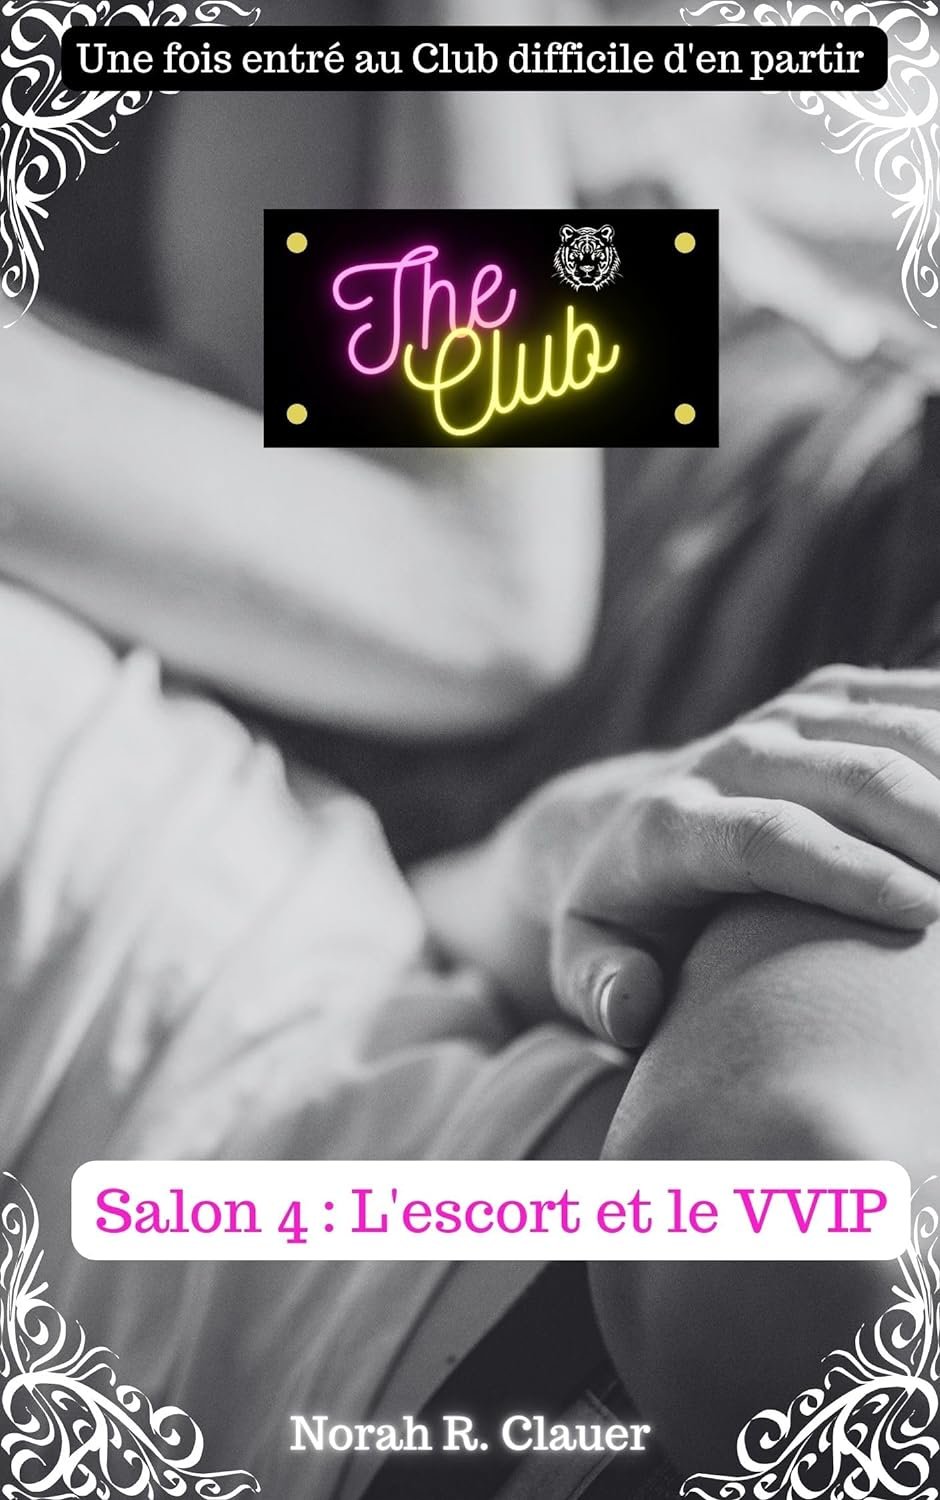 Norah R. Clauer - The Club : Salon 4 : L'escort et le VVIP